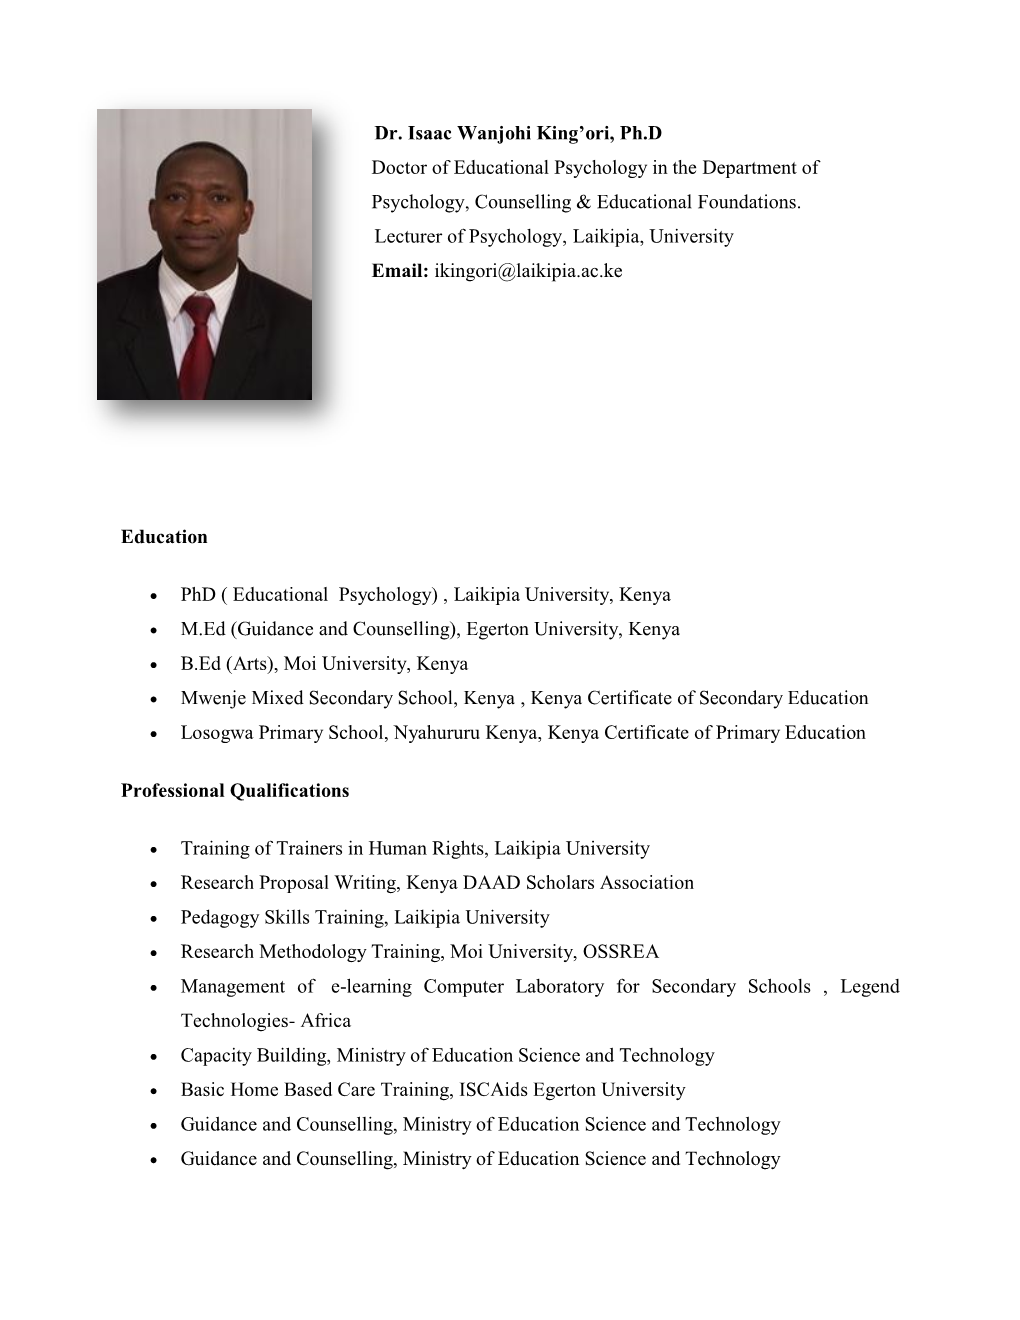 Dr. Isaac Wanjohi King'ori